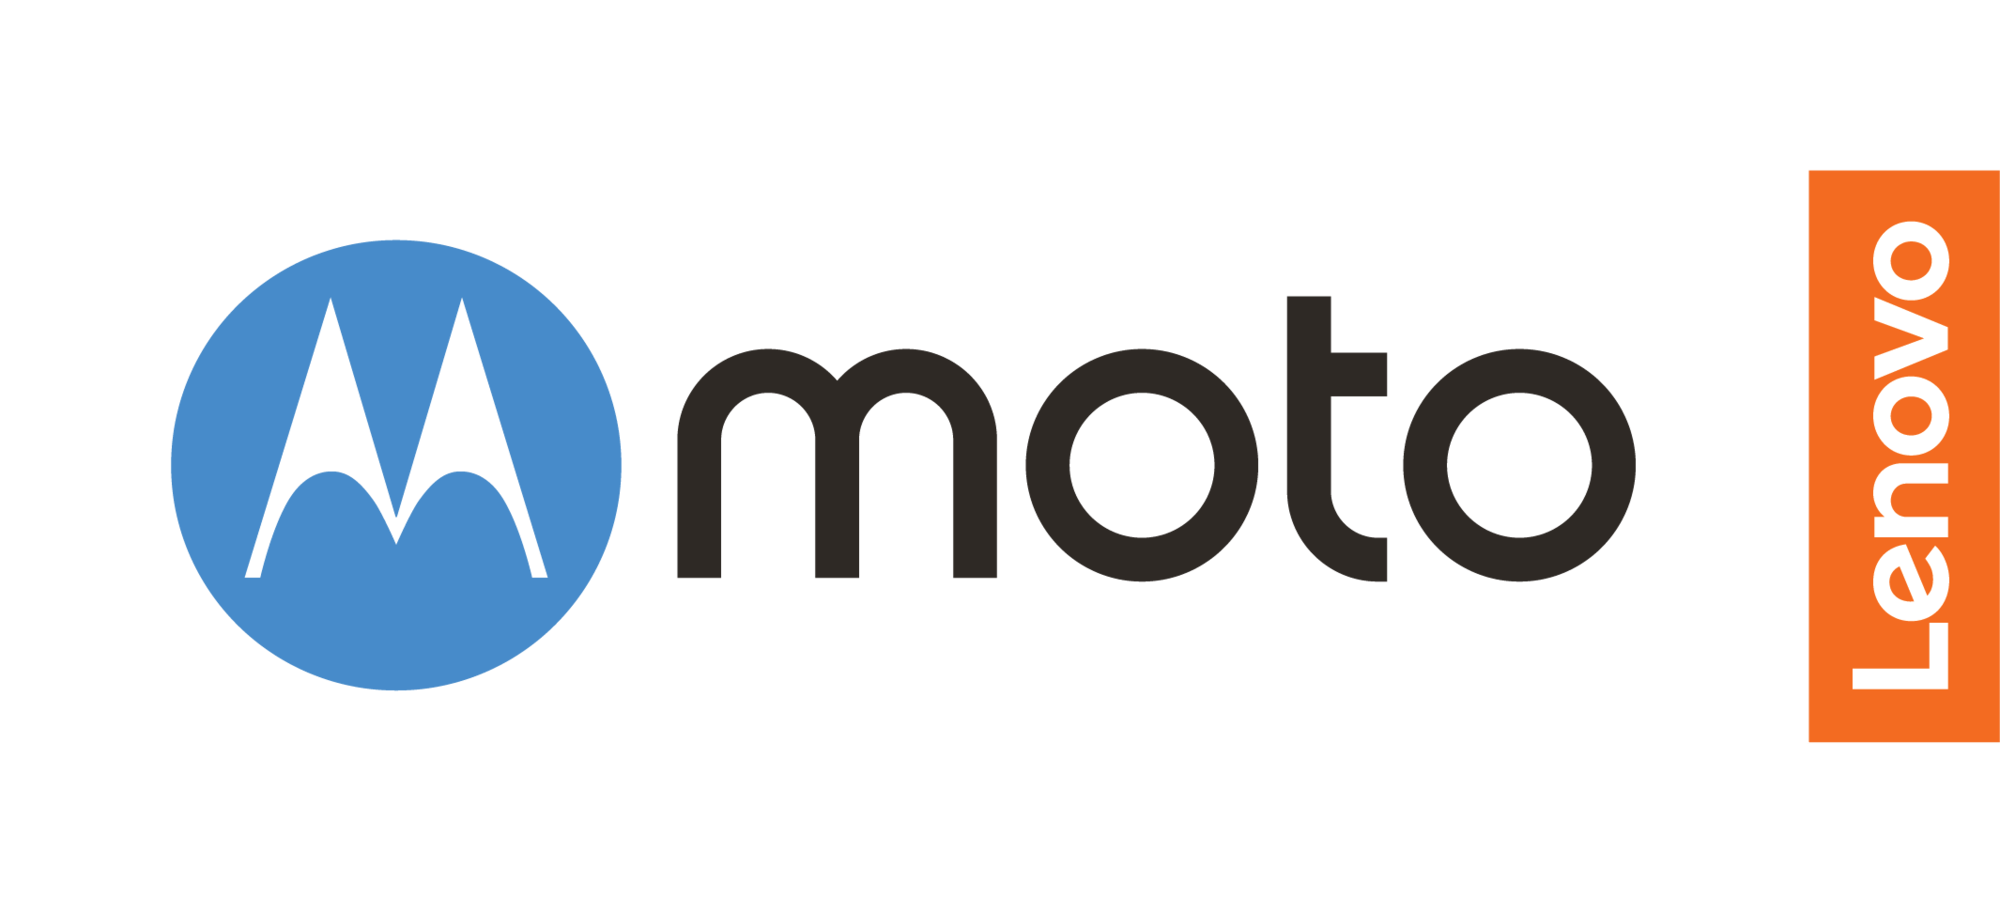 Motorola 2018 Logo - Motorola prepara sus mejores armas para este 2018